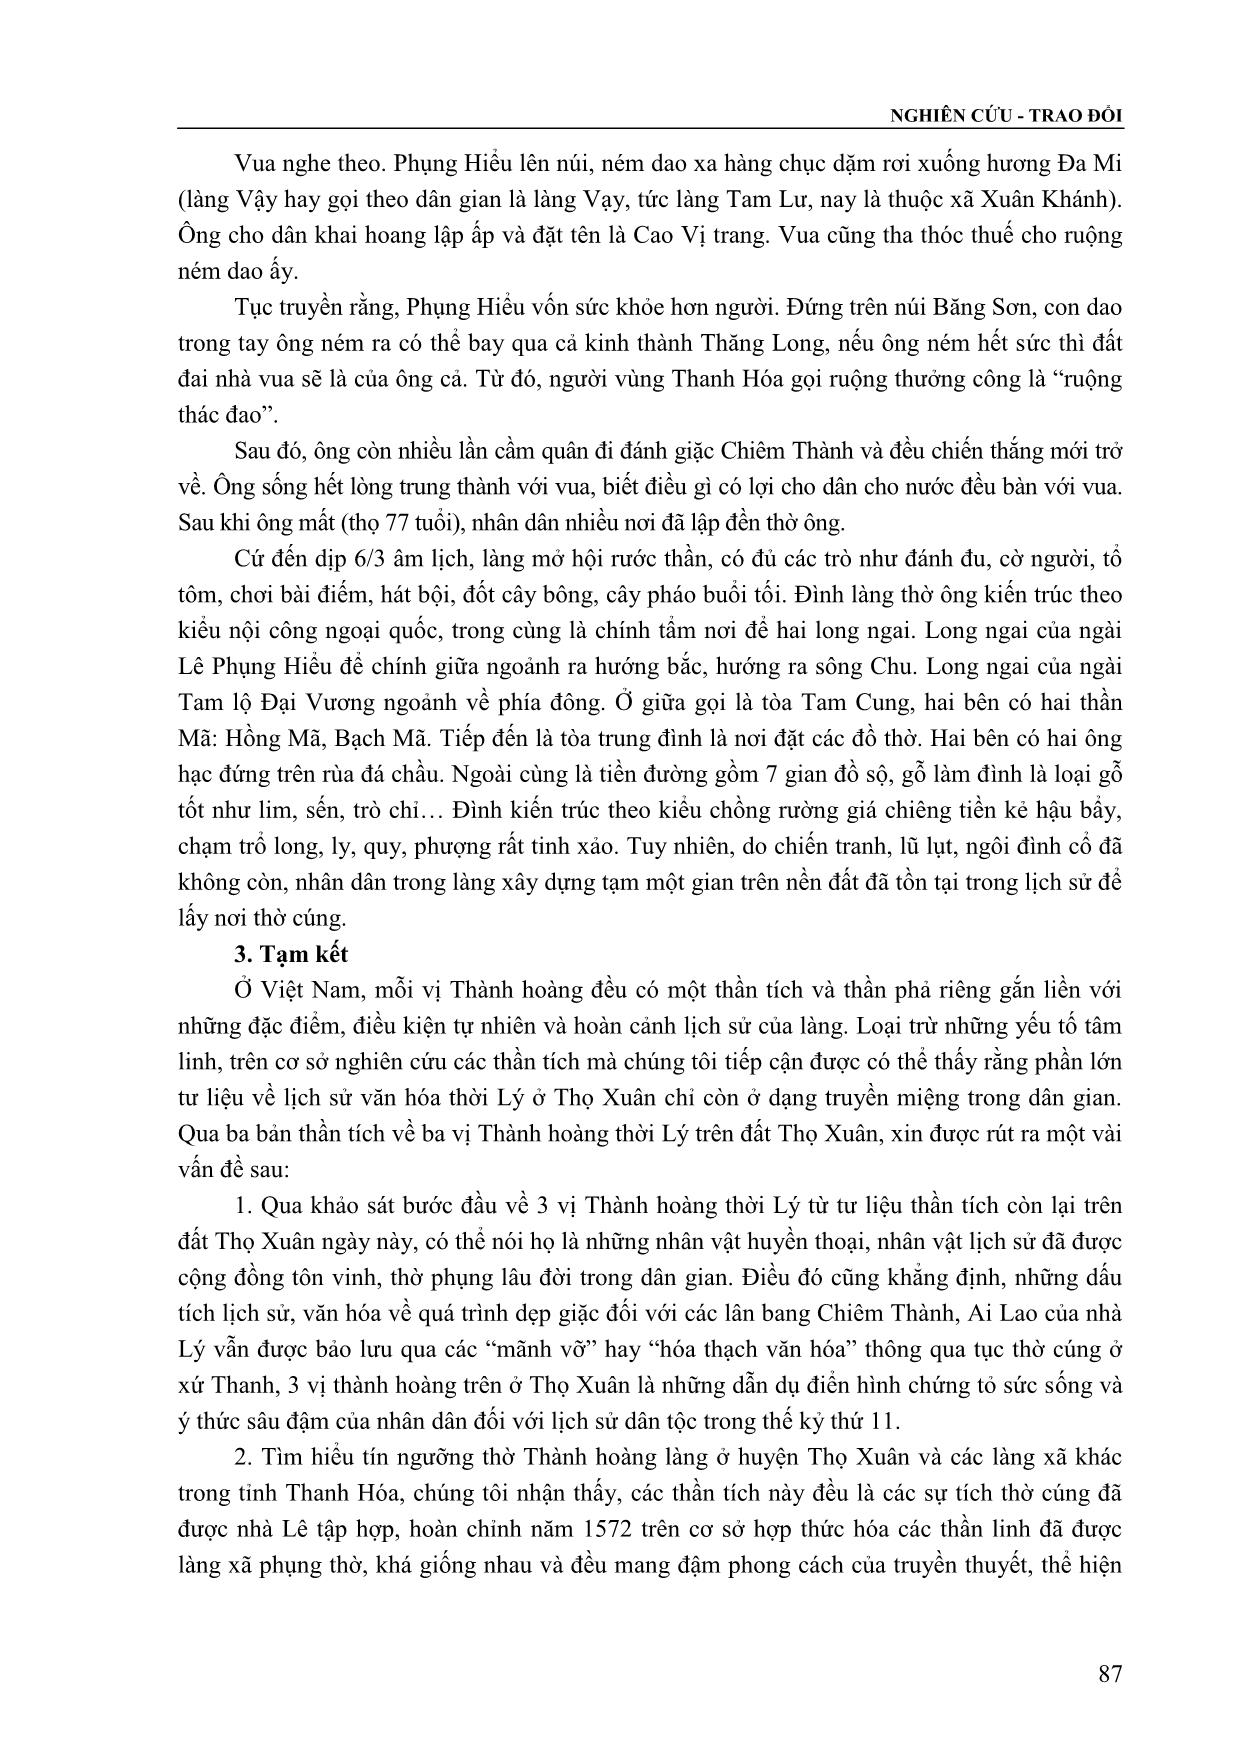 Ba vị Thành hoàng thời Lý trên đất Thọ Xuân qua tư liệu thần tích trang 7